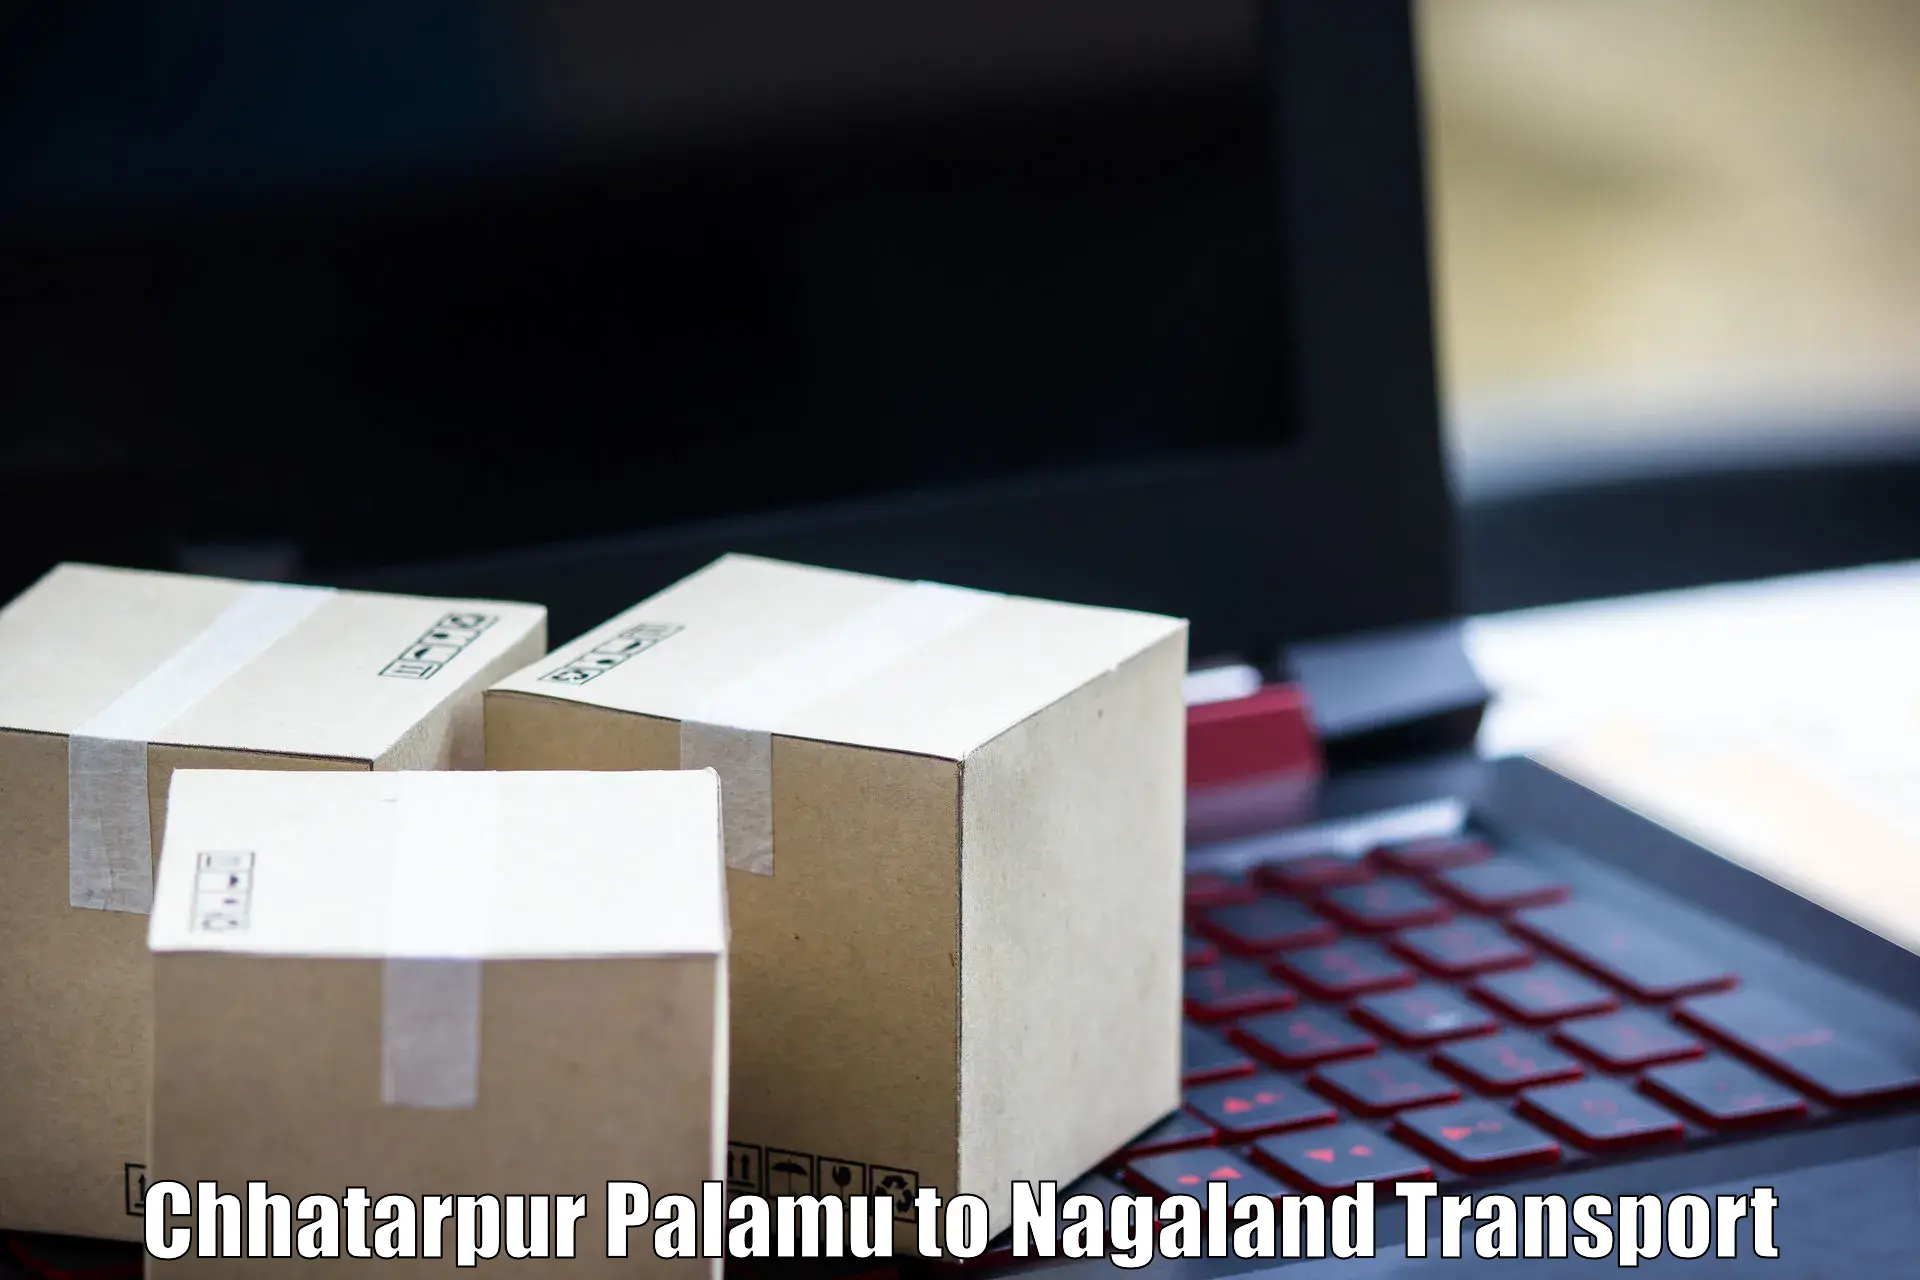 Vehicle parcel service Chhatarpur Palamu to Dimapur